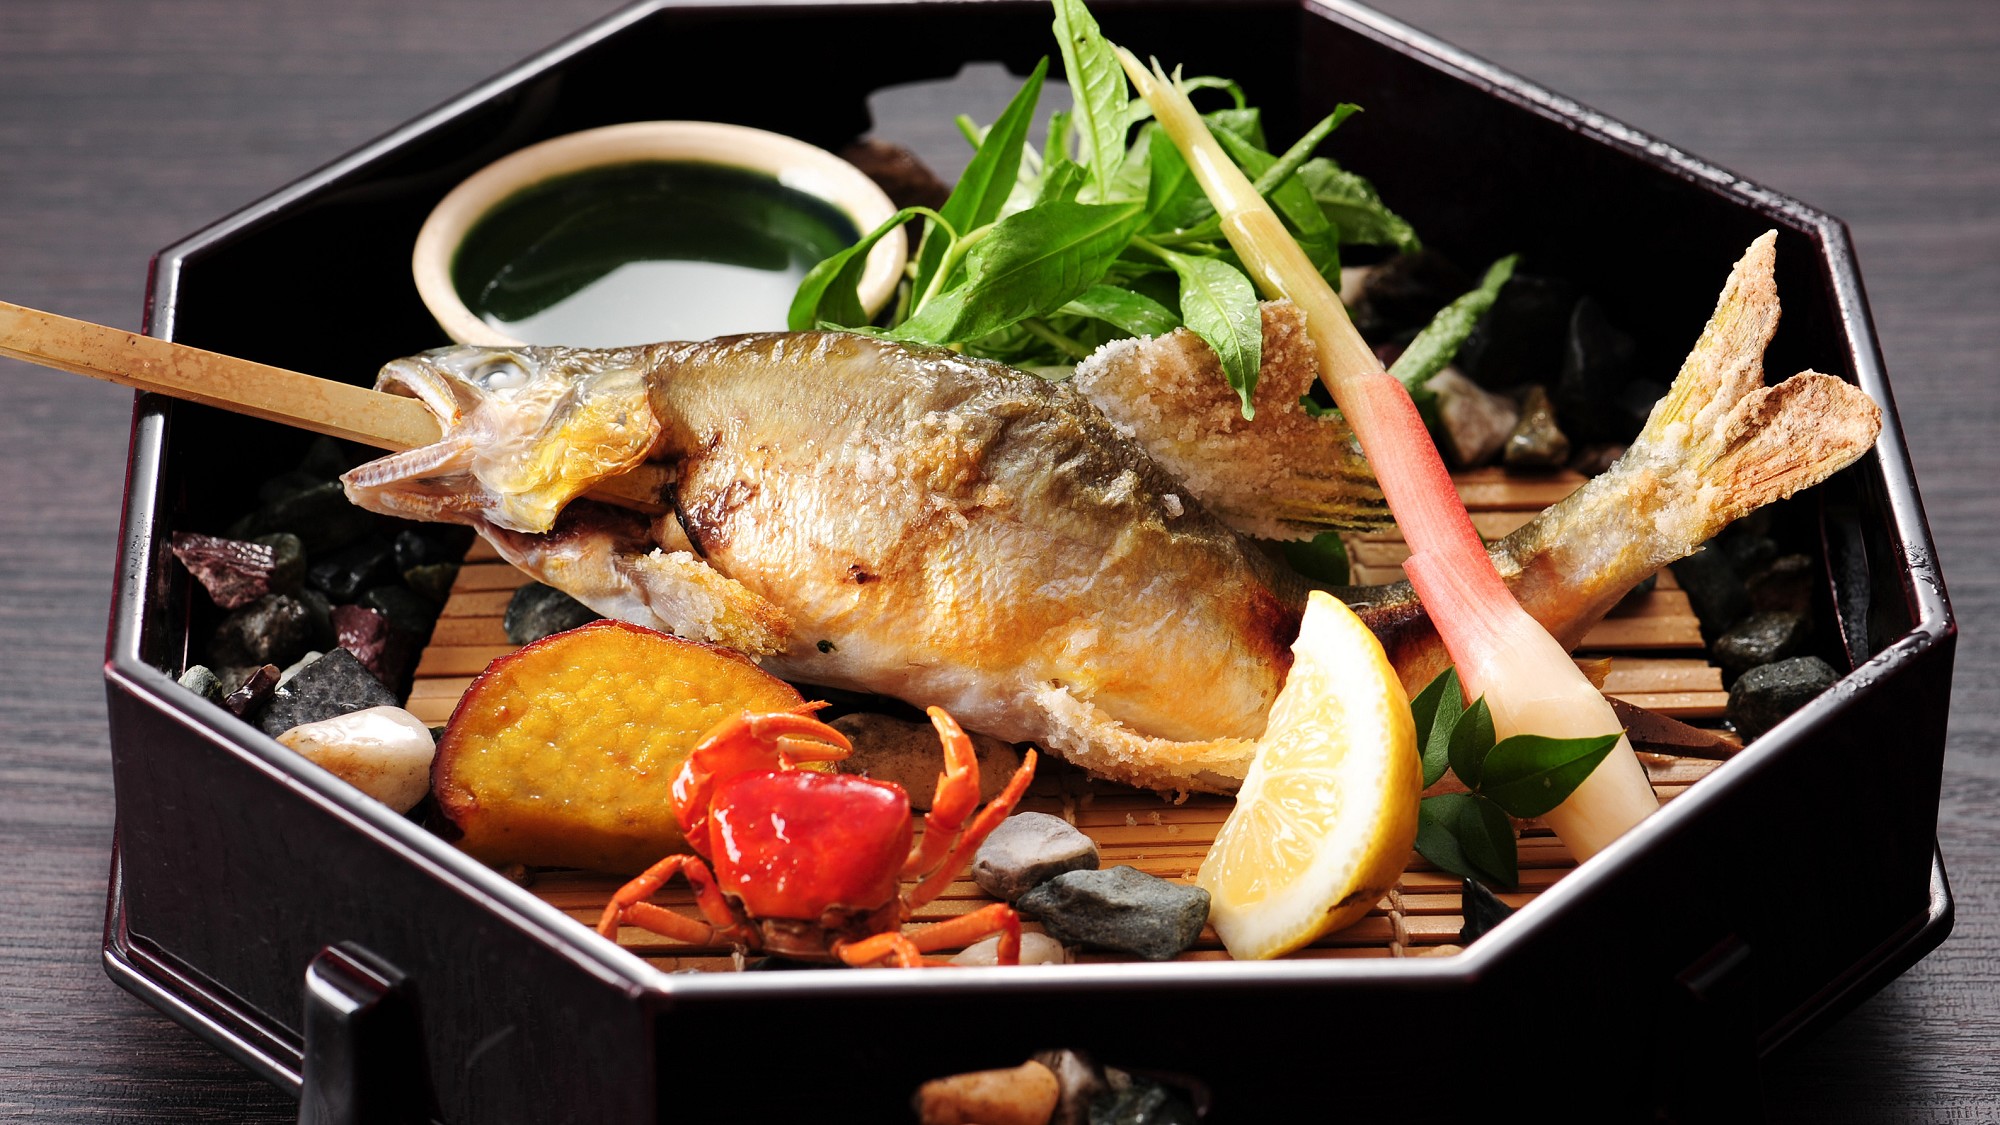 ＊【別注料理】川魚の塩焼き 　季節によって岩魚、鮎、山女などを提供しております。